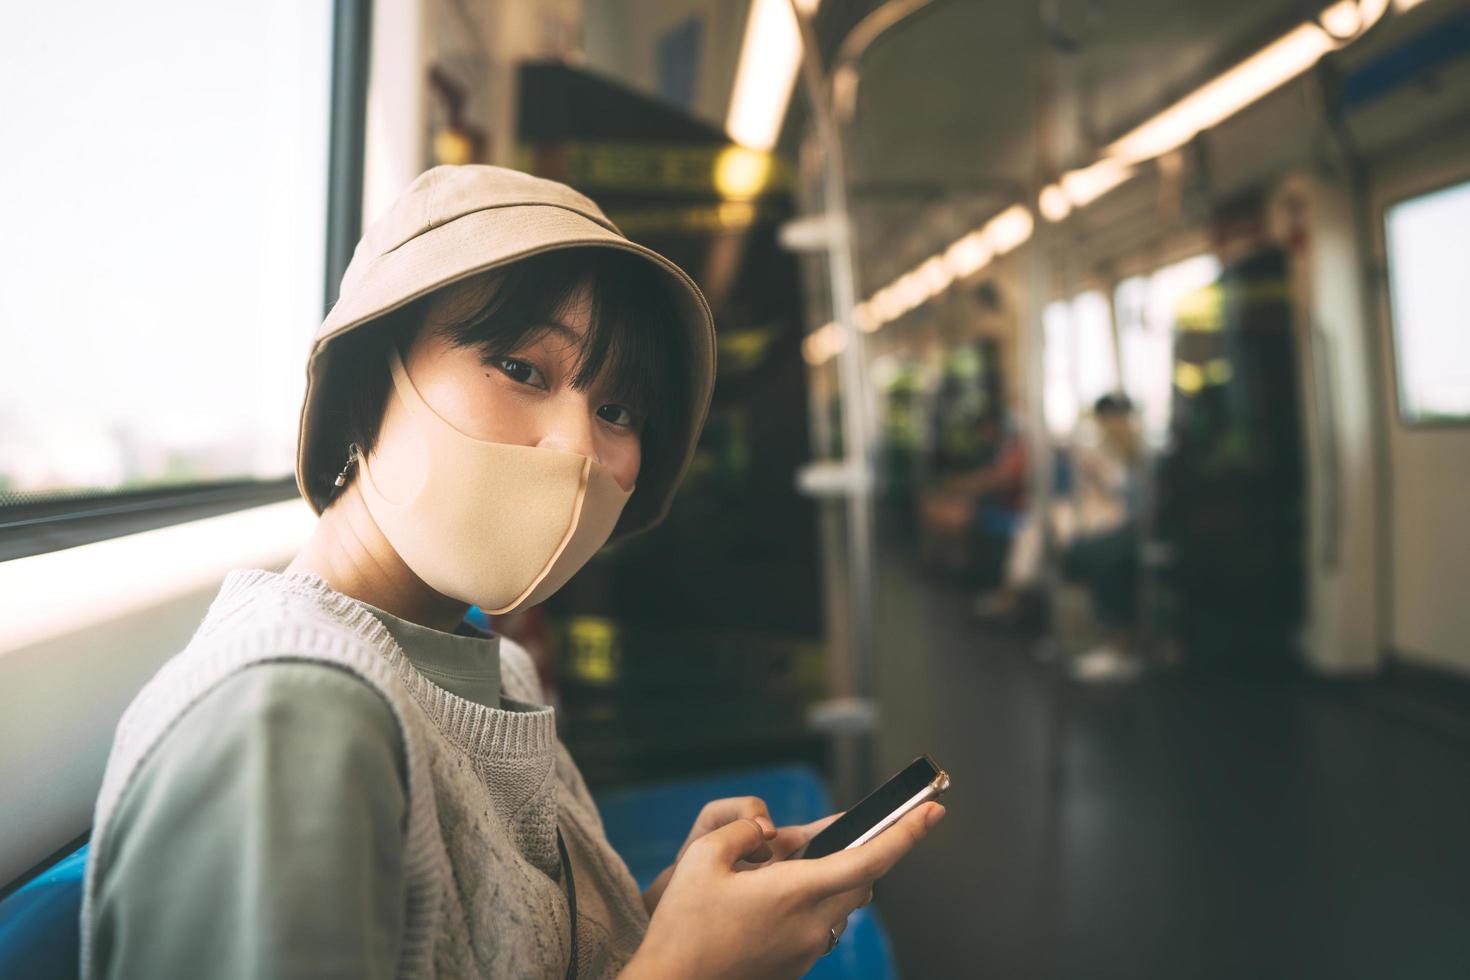 jeune femme asiatique adulte avec masque facial pour la santé publique des transports en train. photo